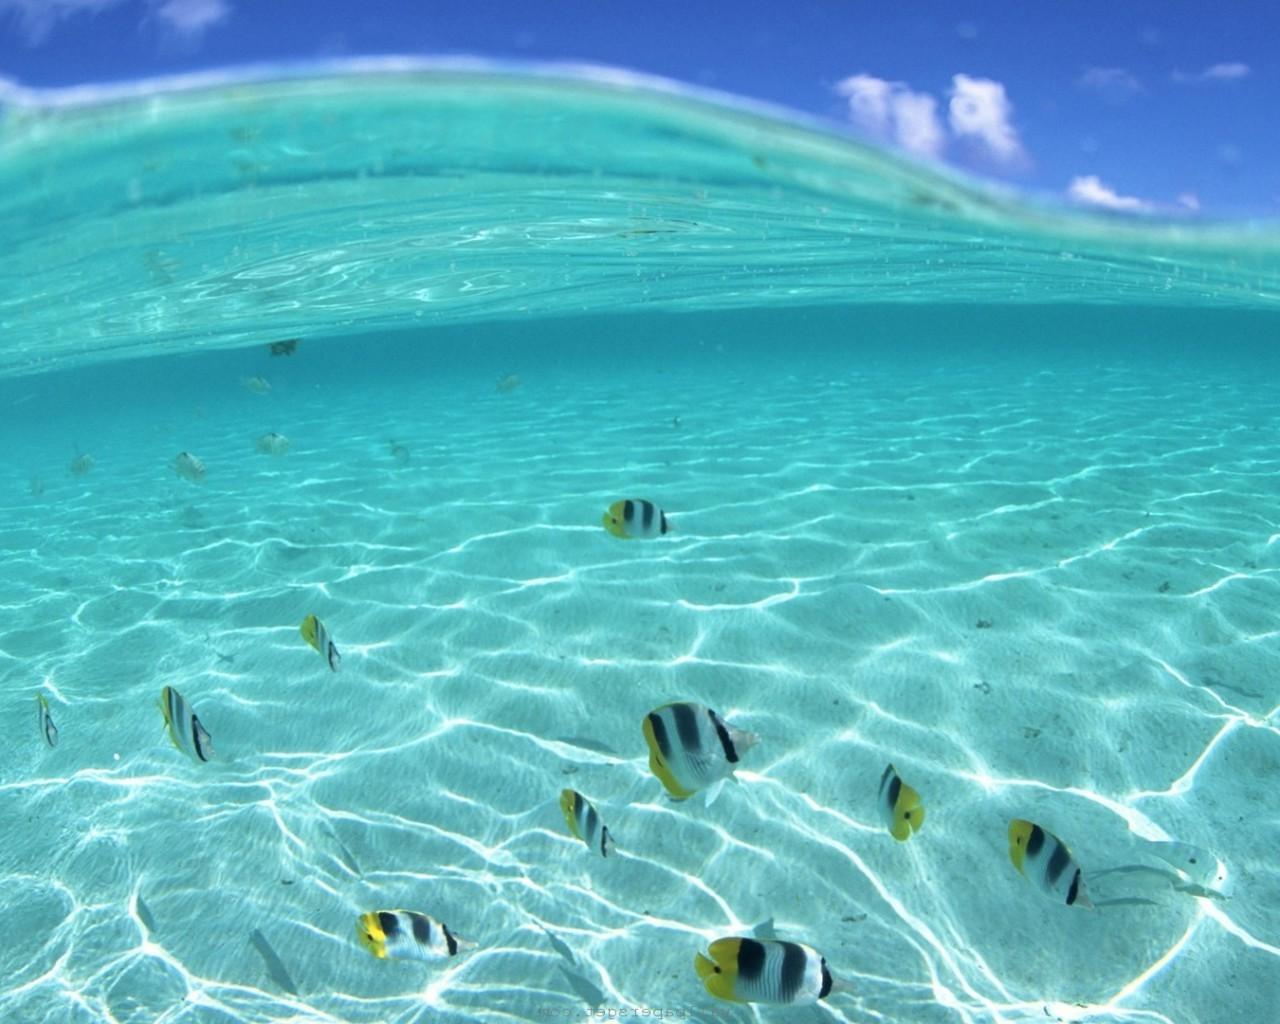 Hawaii Underwater Wallpapers - Top Free Hawaii Underwater Backgrounds ...